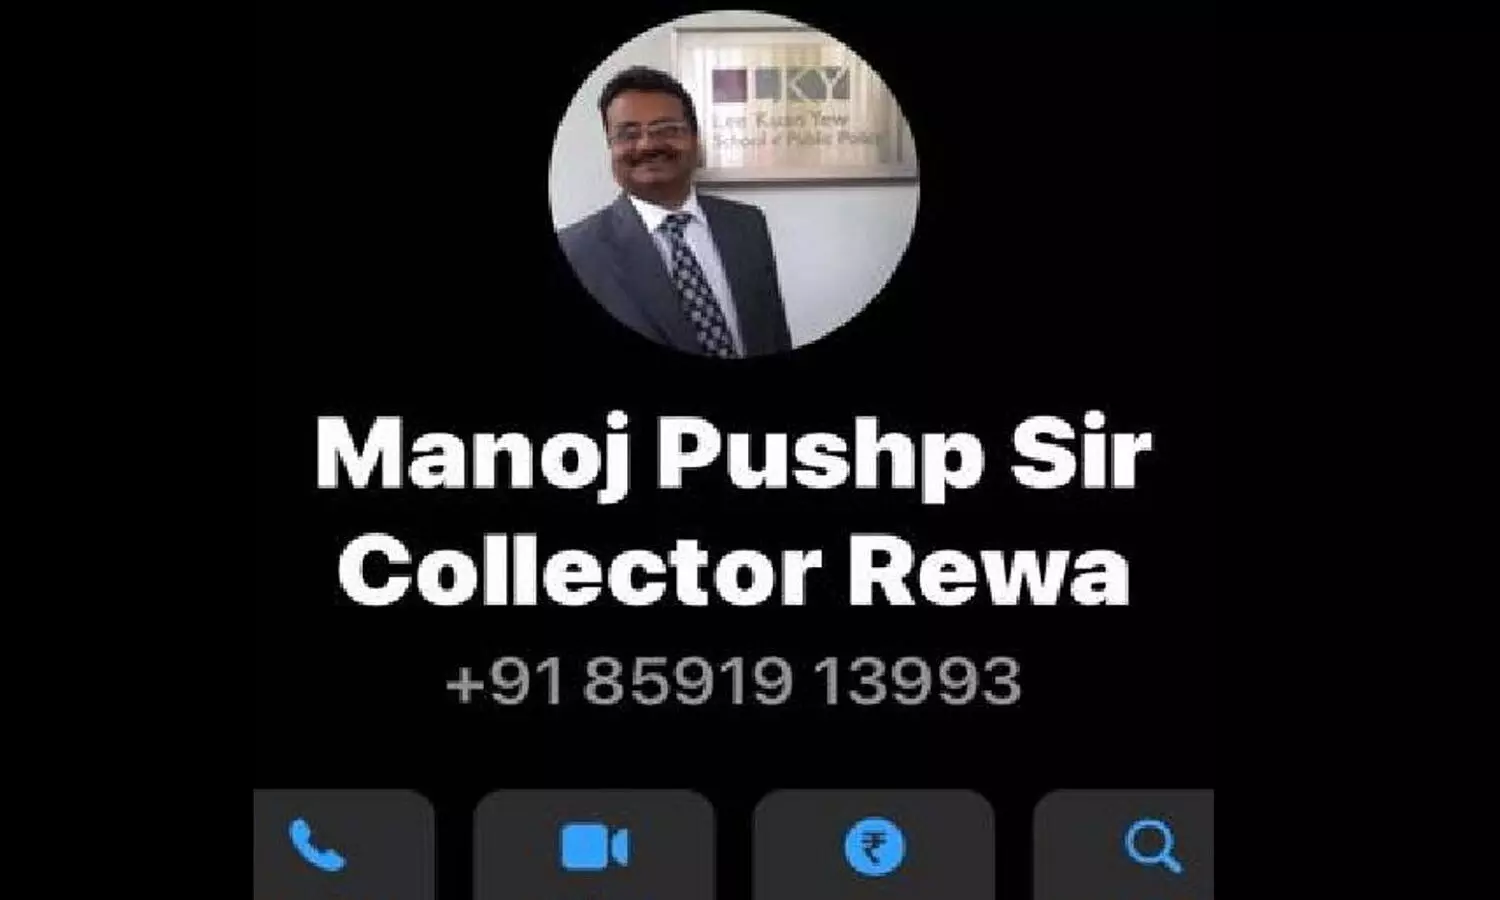 MP Rewa: वाट्सएप की डीपी में रीवा कलेक्टर की फोटो लगा कर पैसे की डिमांड, टीम कर रही जांच